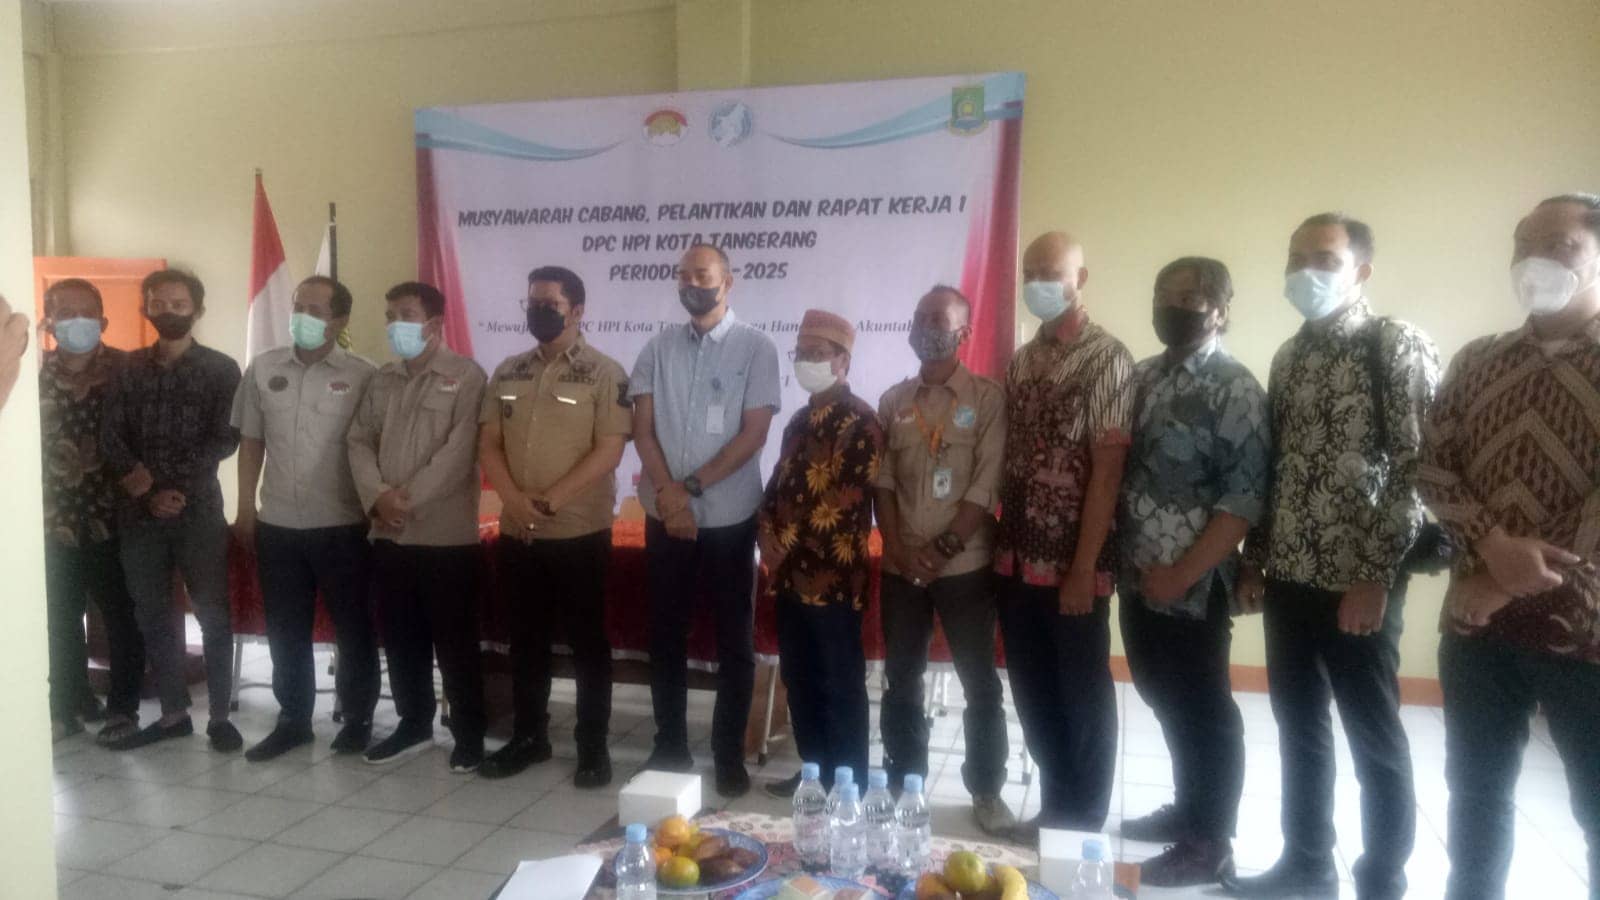 Pandemi Covid-19, HPI Diminta Bangkitkan Pariwisata Kota Tangerang